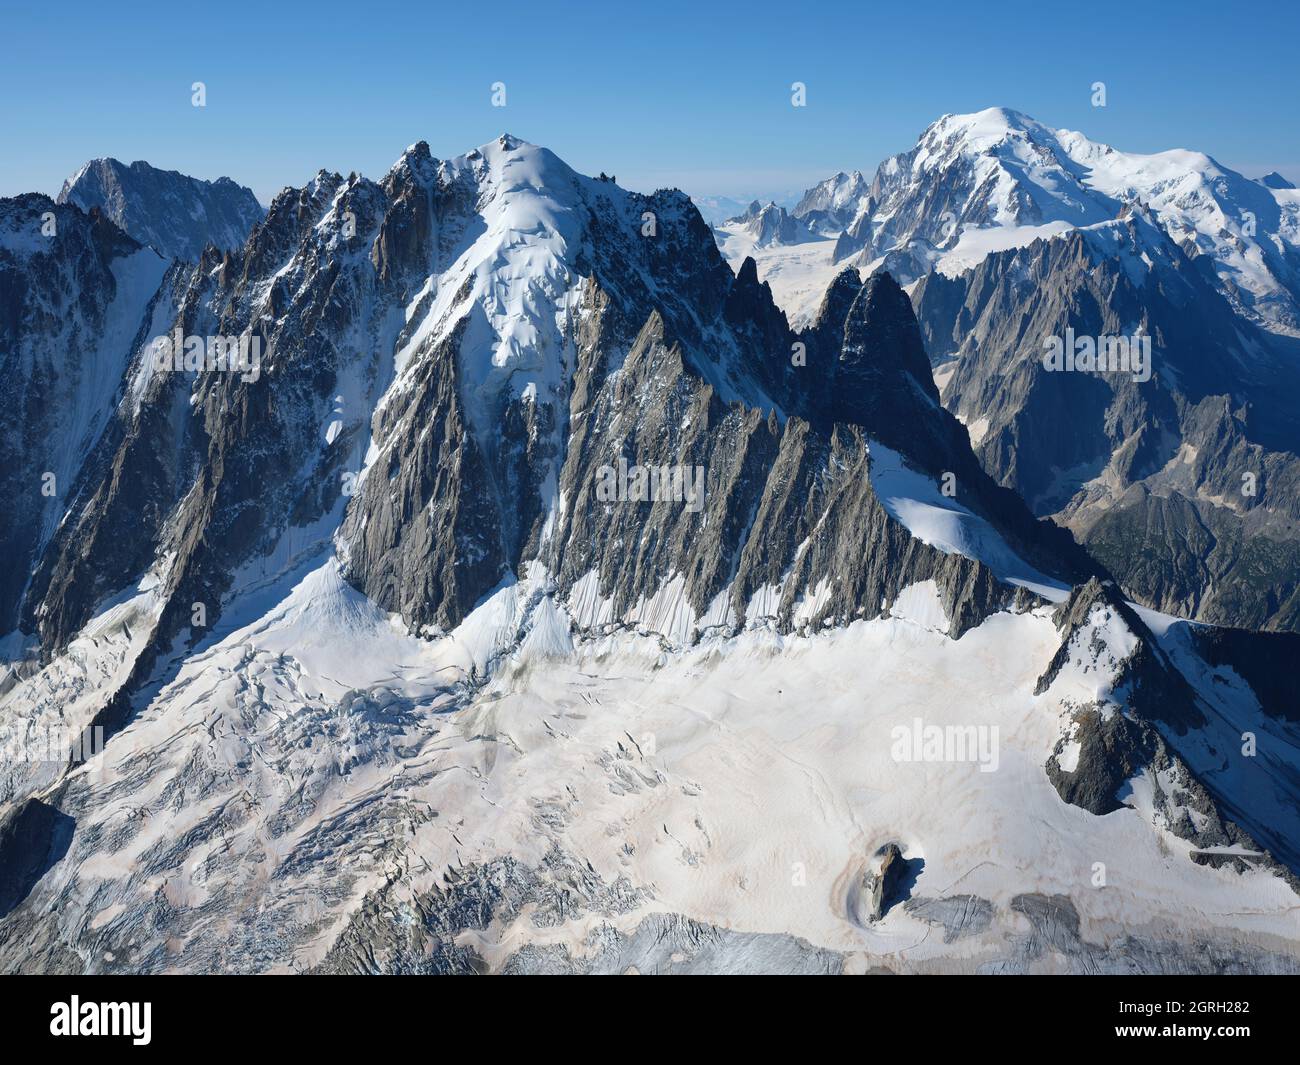 LUFTAUFNAHME. Nordwand der Aiguille Verte (Höhe: 4122 m) mit Mont Blanc (4807 m) in der Ferne. Chamonix, Haute-Savoie, Frankreich. Stockfoto